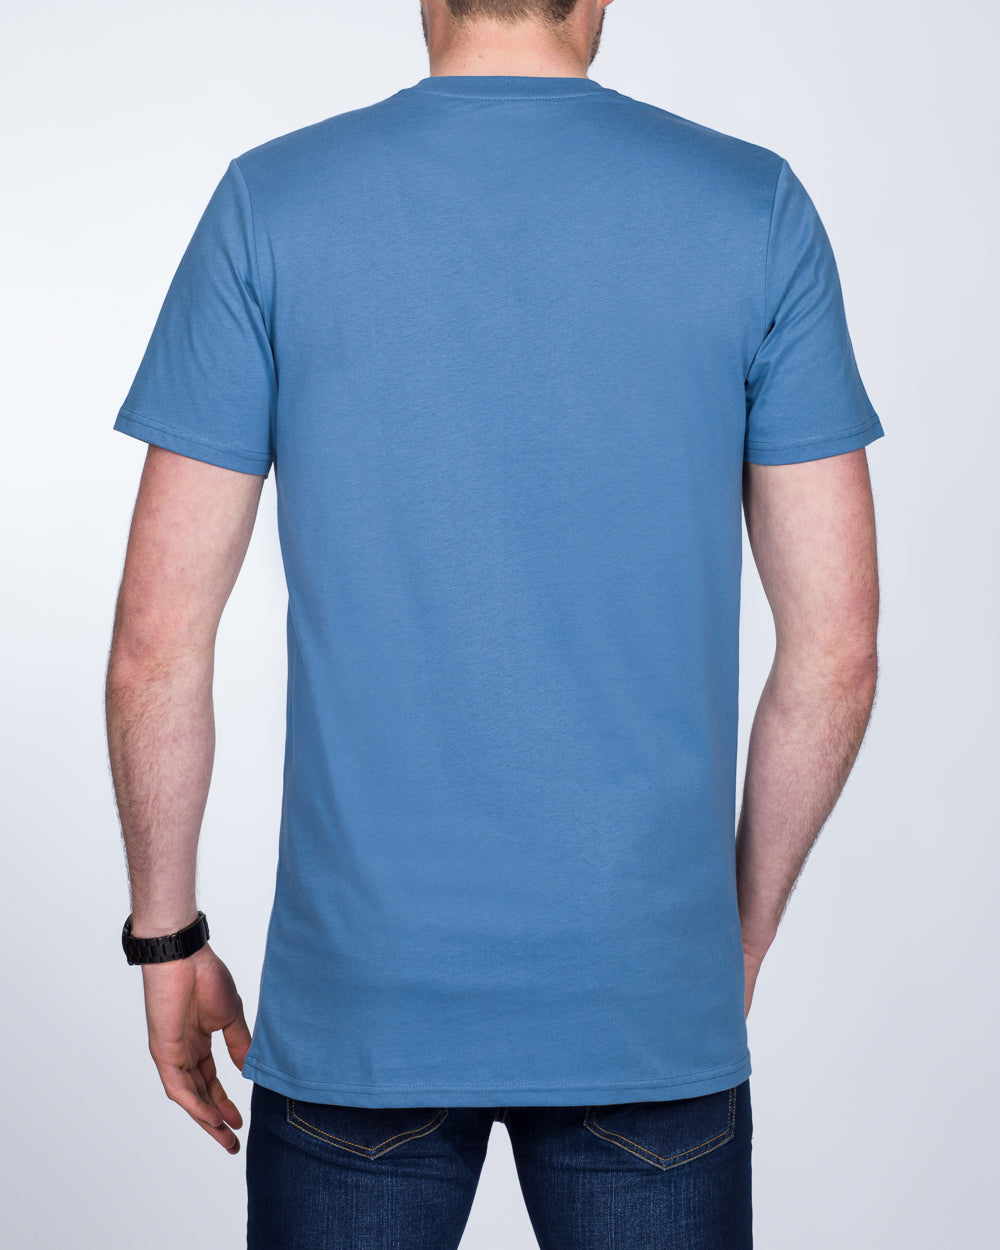 Girav Sydney Tall T-Shirt (jeans blue)